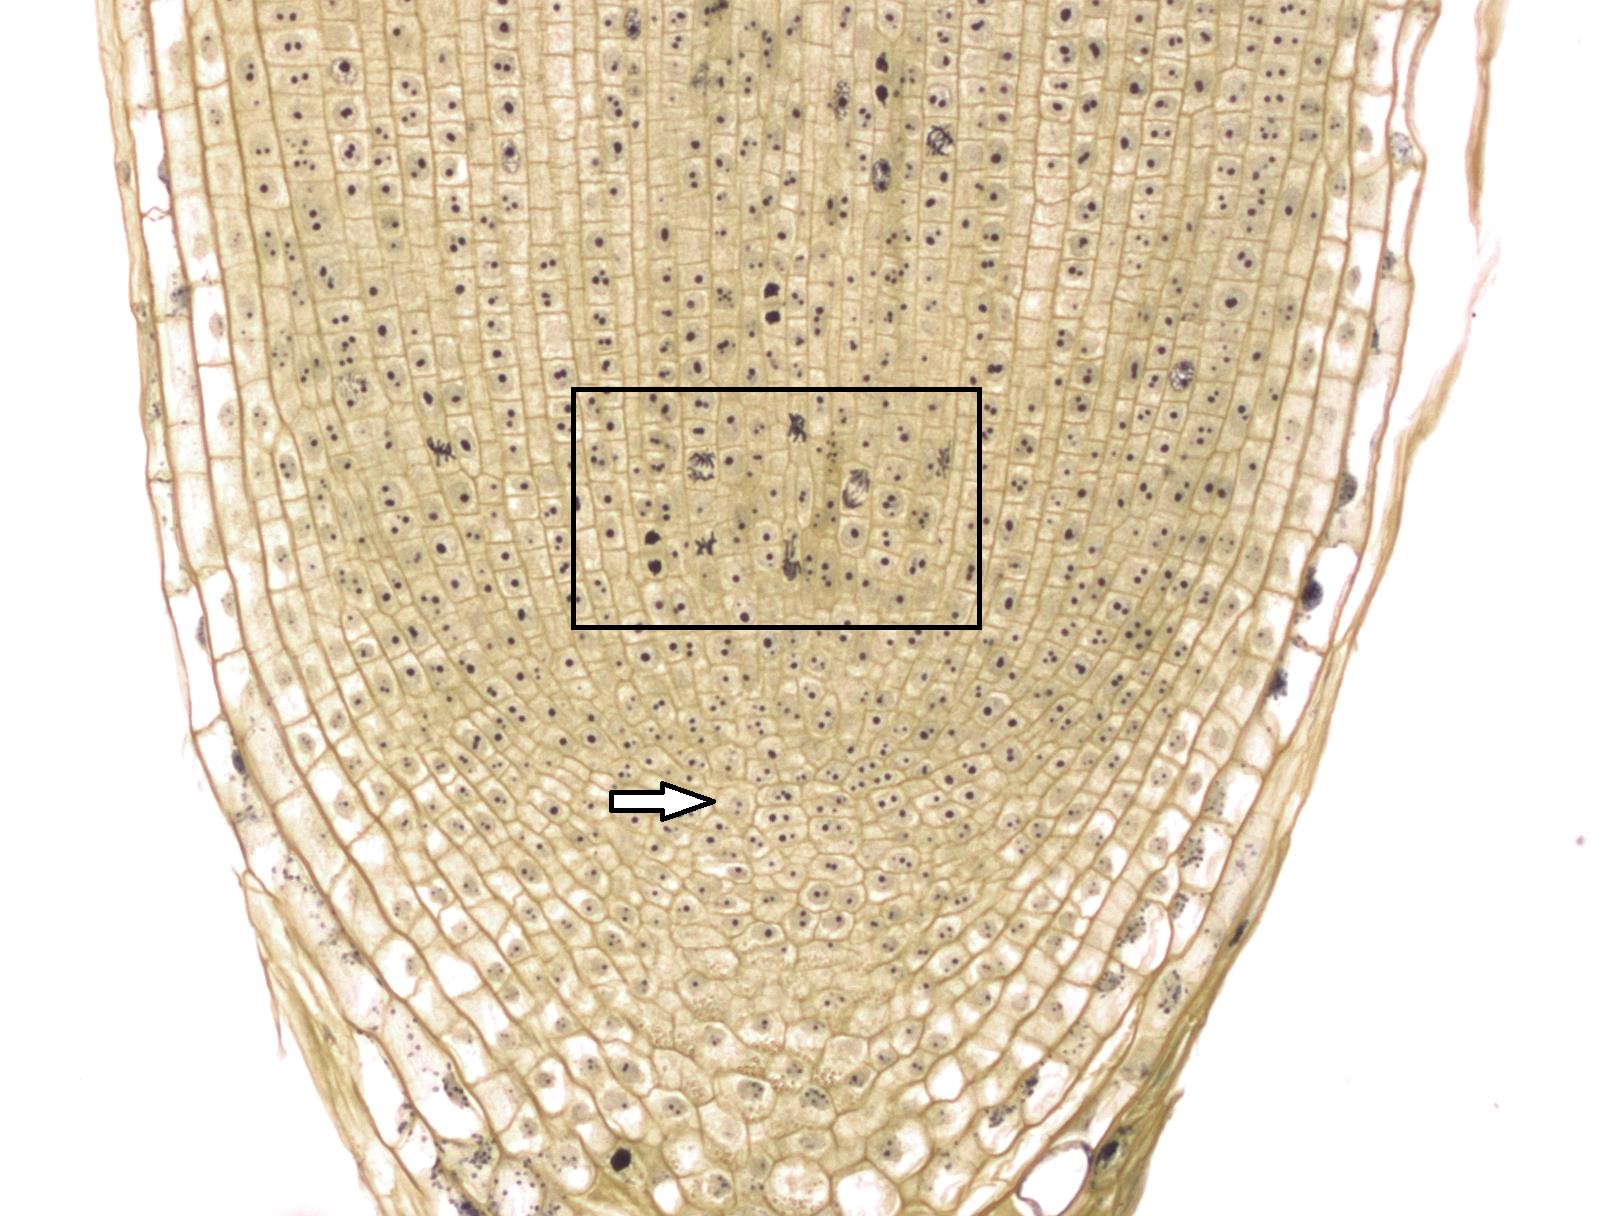 Punta de raíz de cebolla a mayor aumento, muchas células tienen cromosomas visibles debido a la tinción